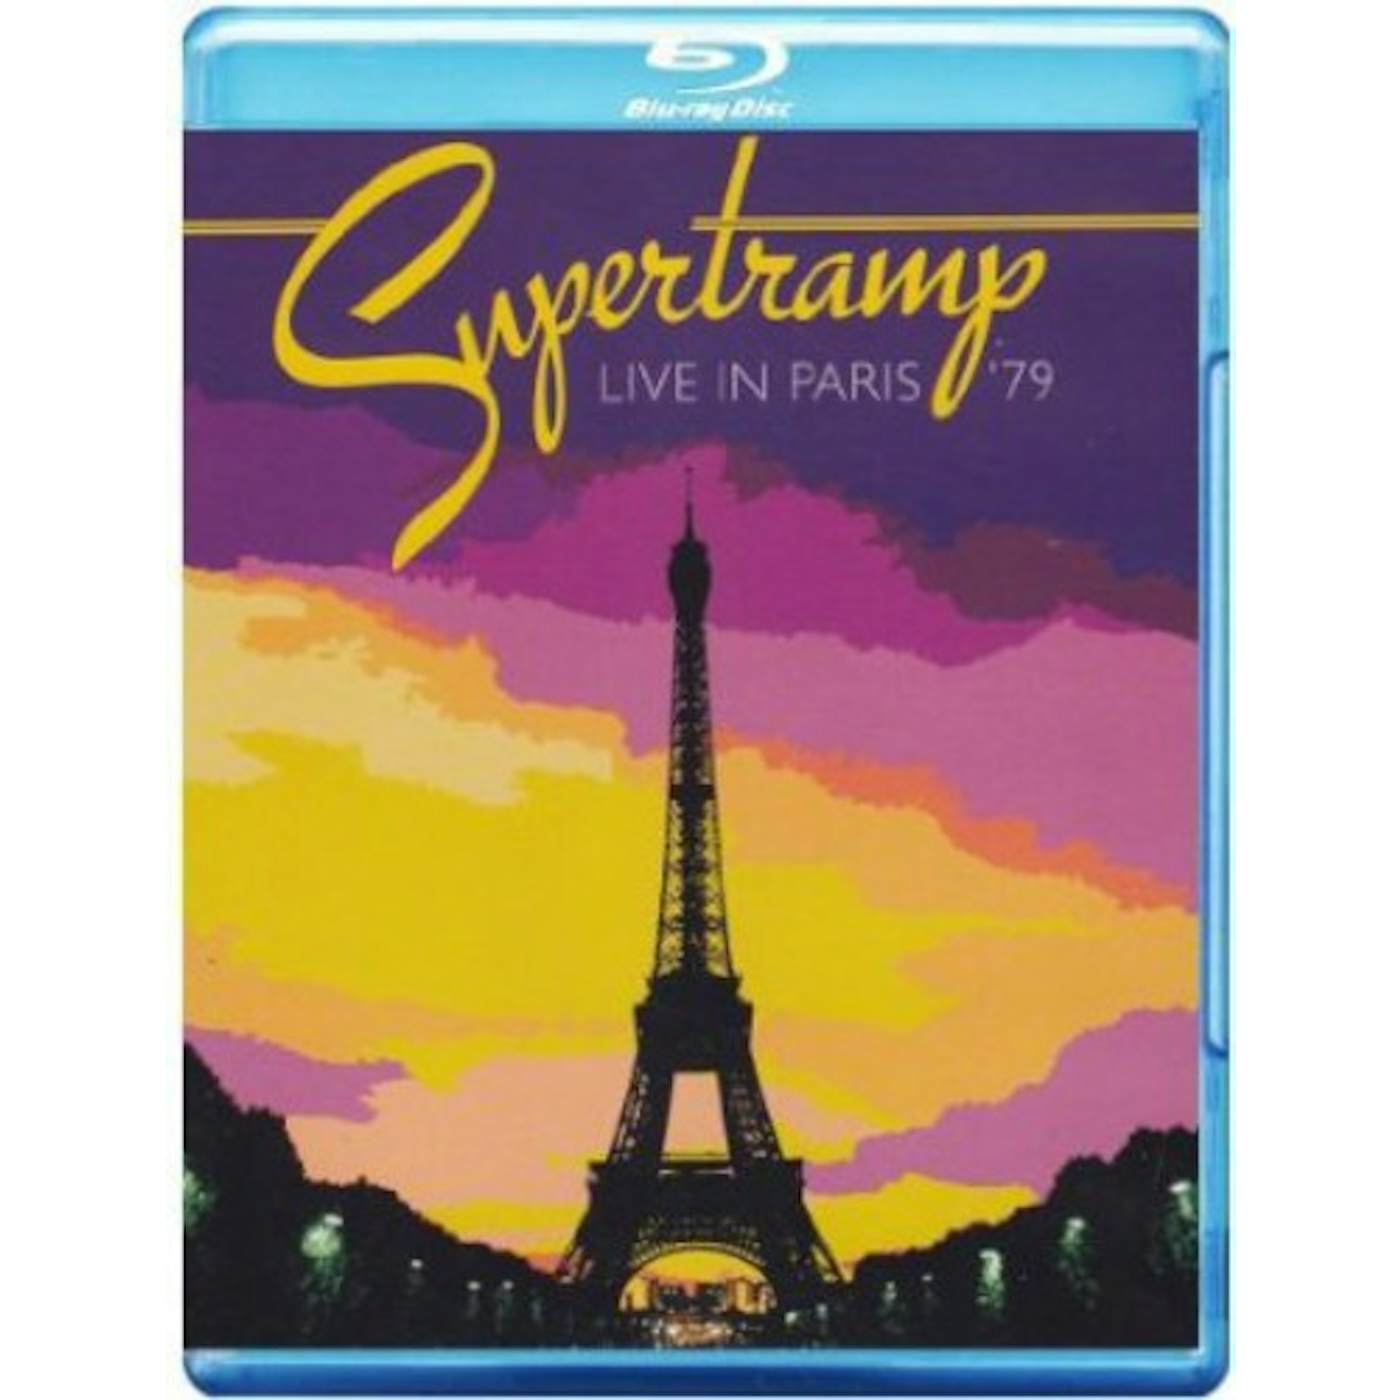 Supertramp LIVE IN PARIS '79 Blu-ray